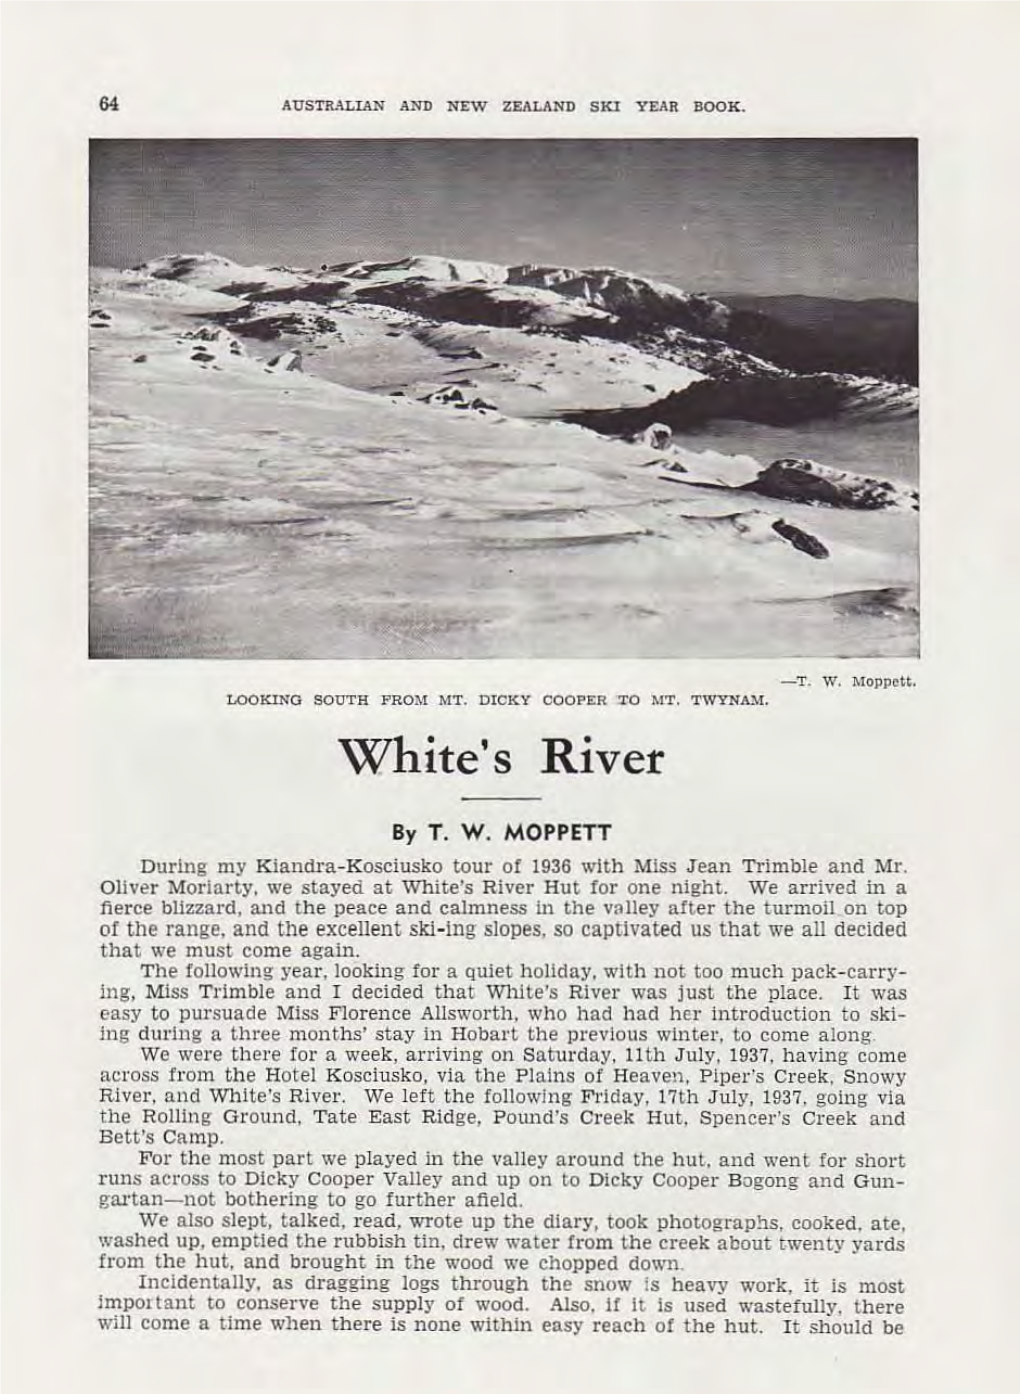 White's River